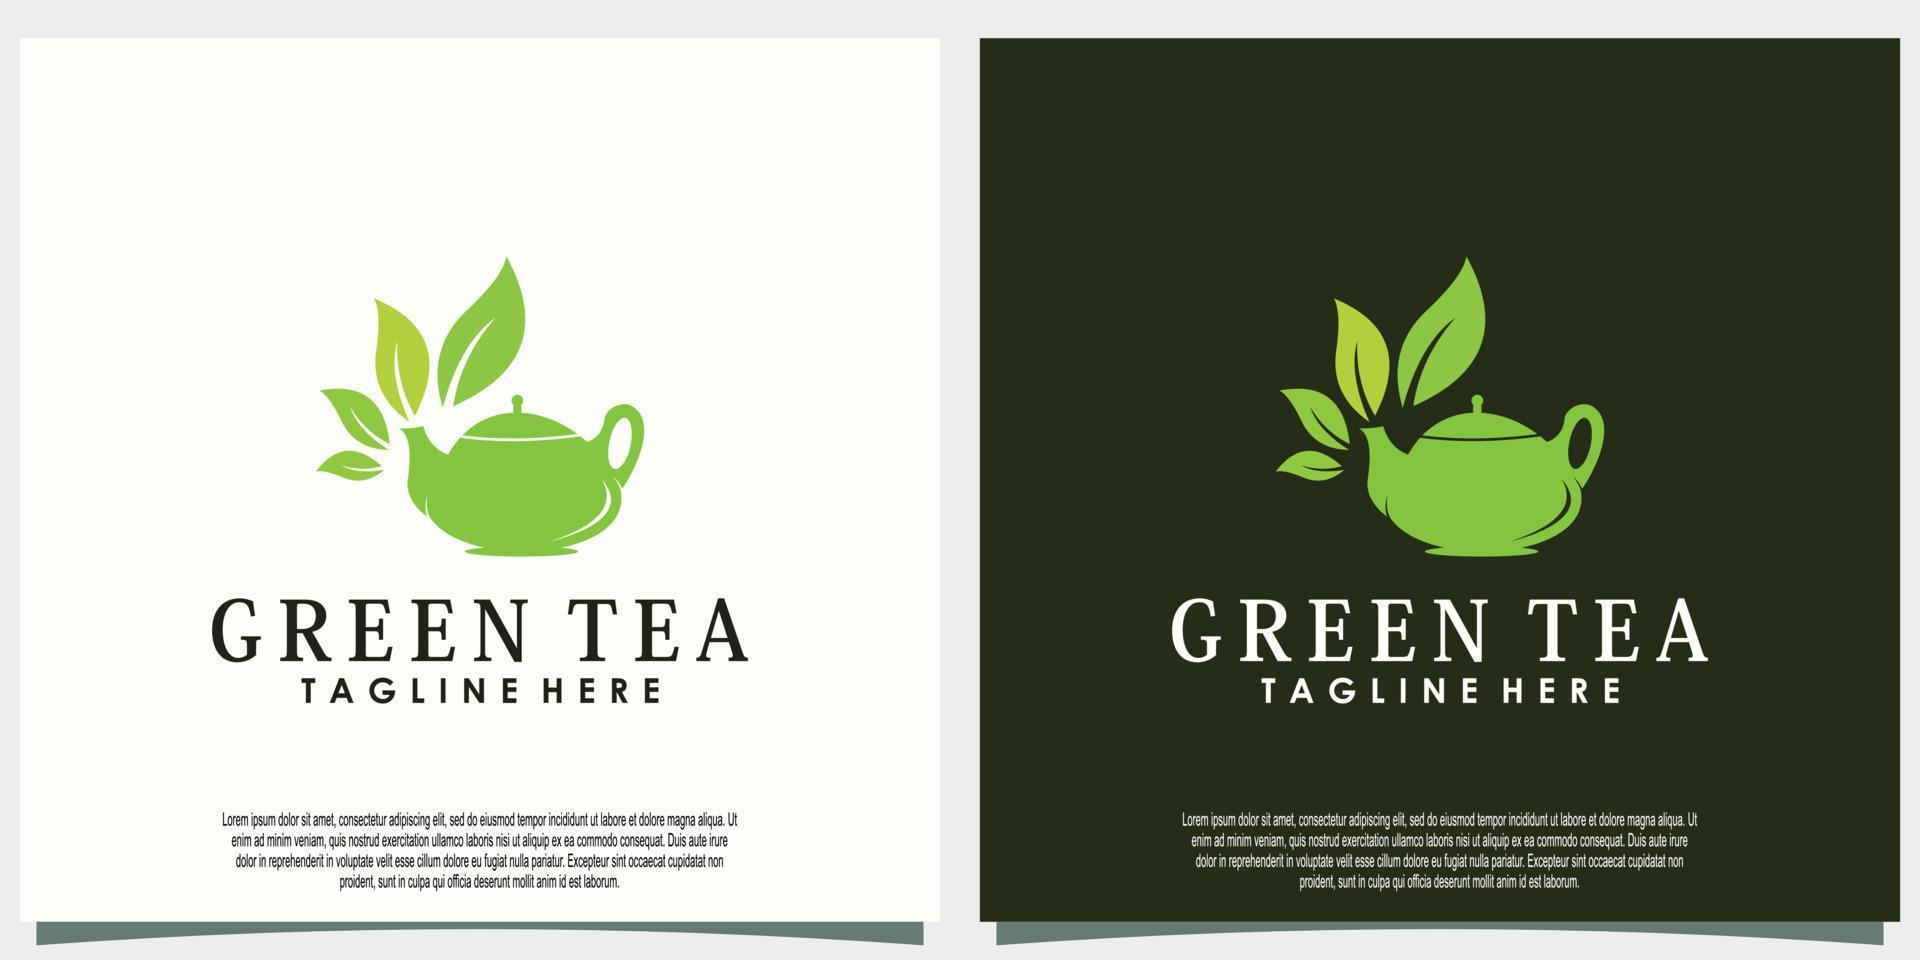 diseño de logotipo de té verde con concepto creativo de hoja y tetera vector